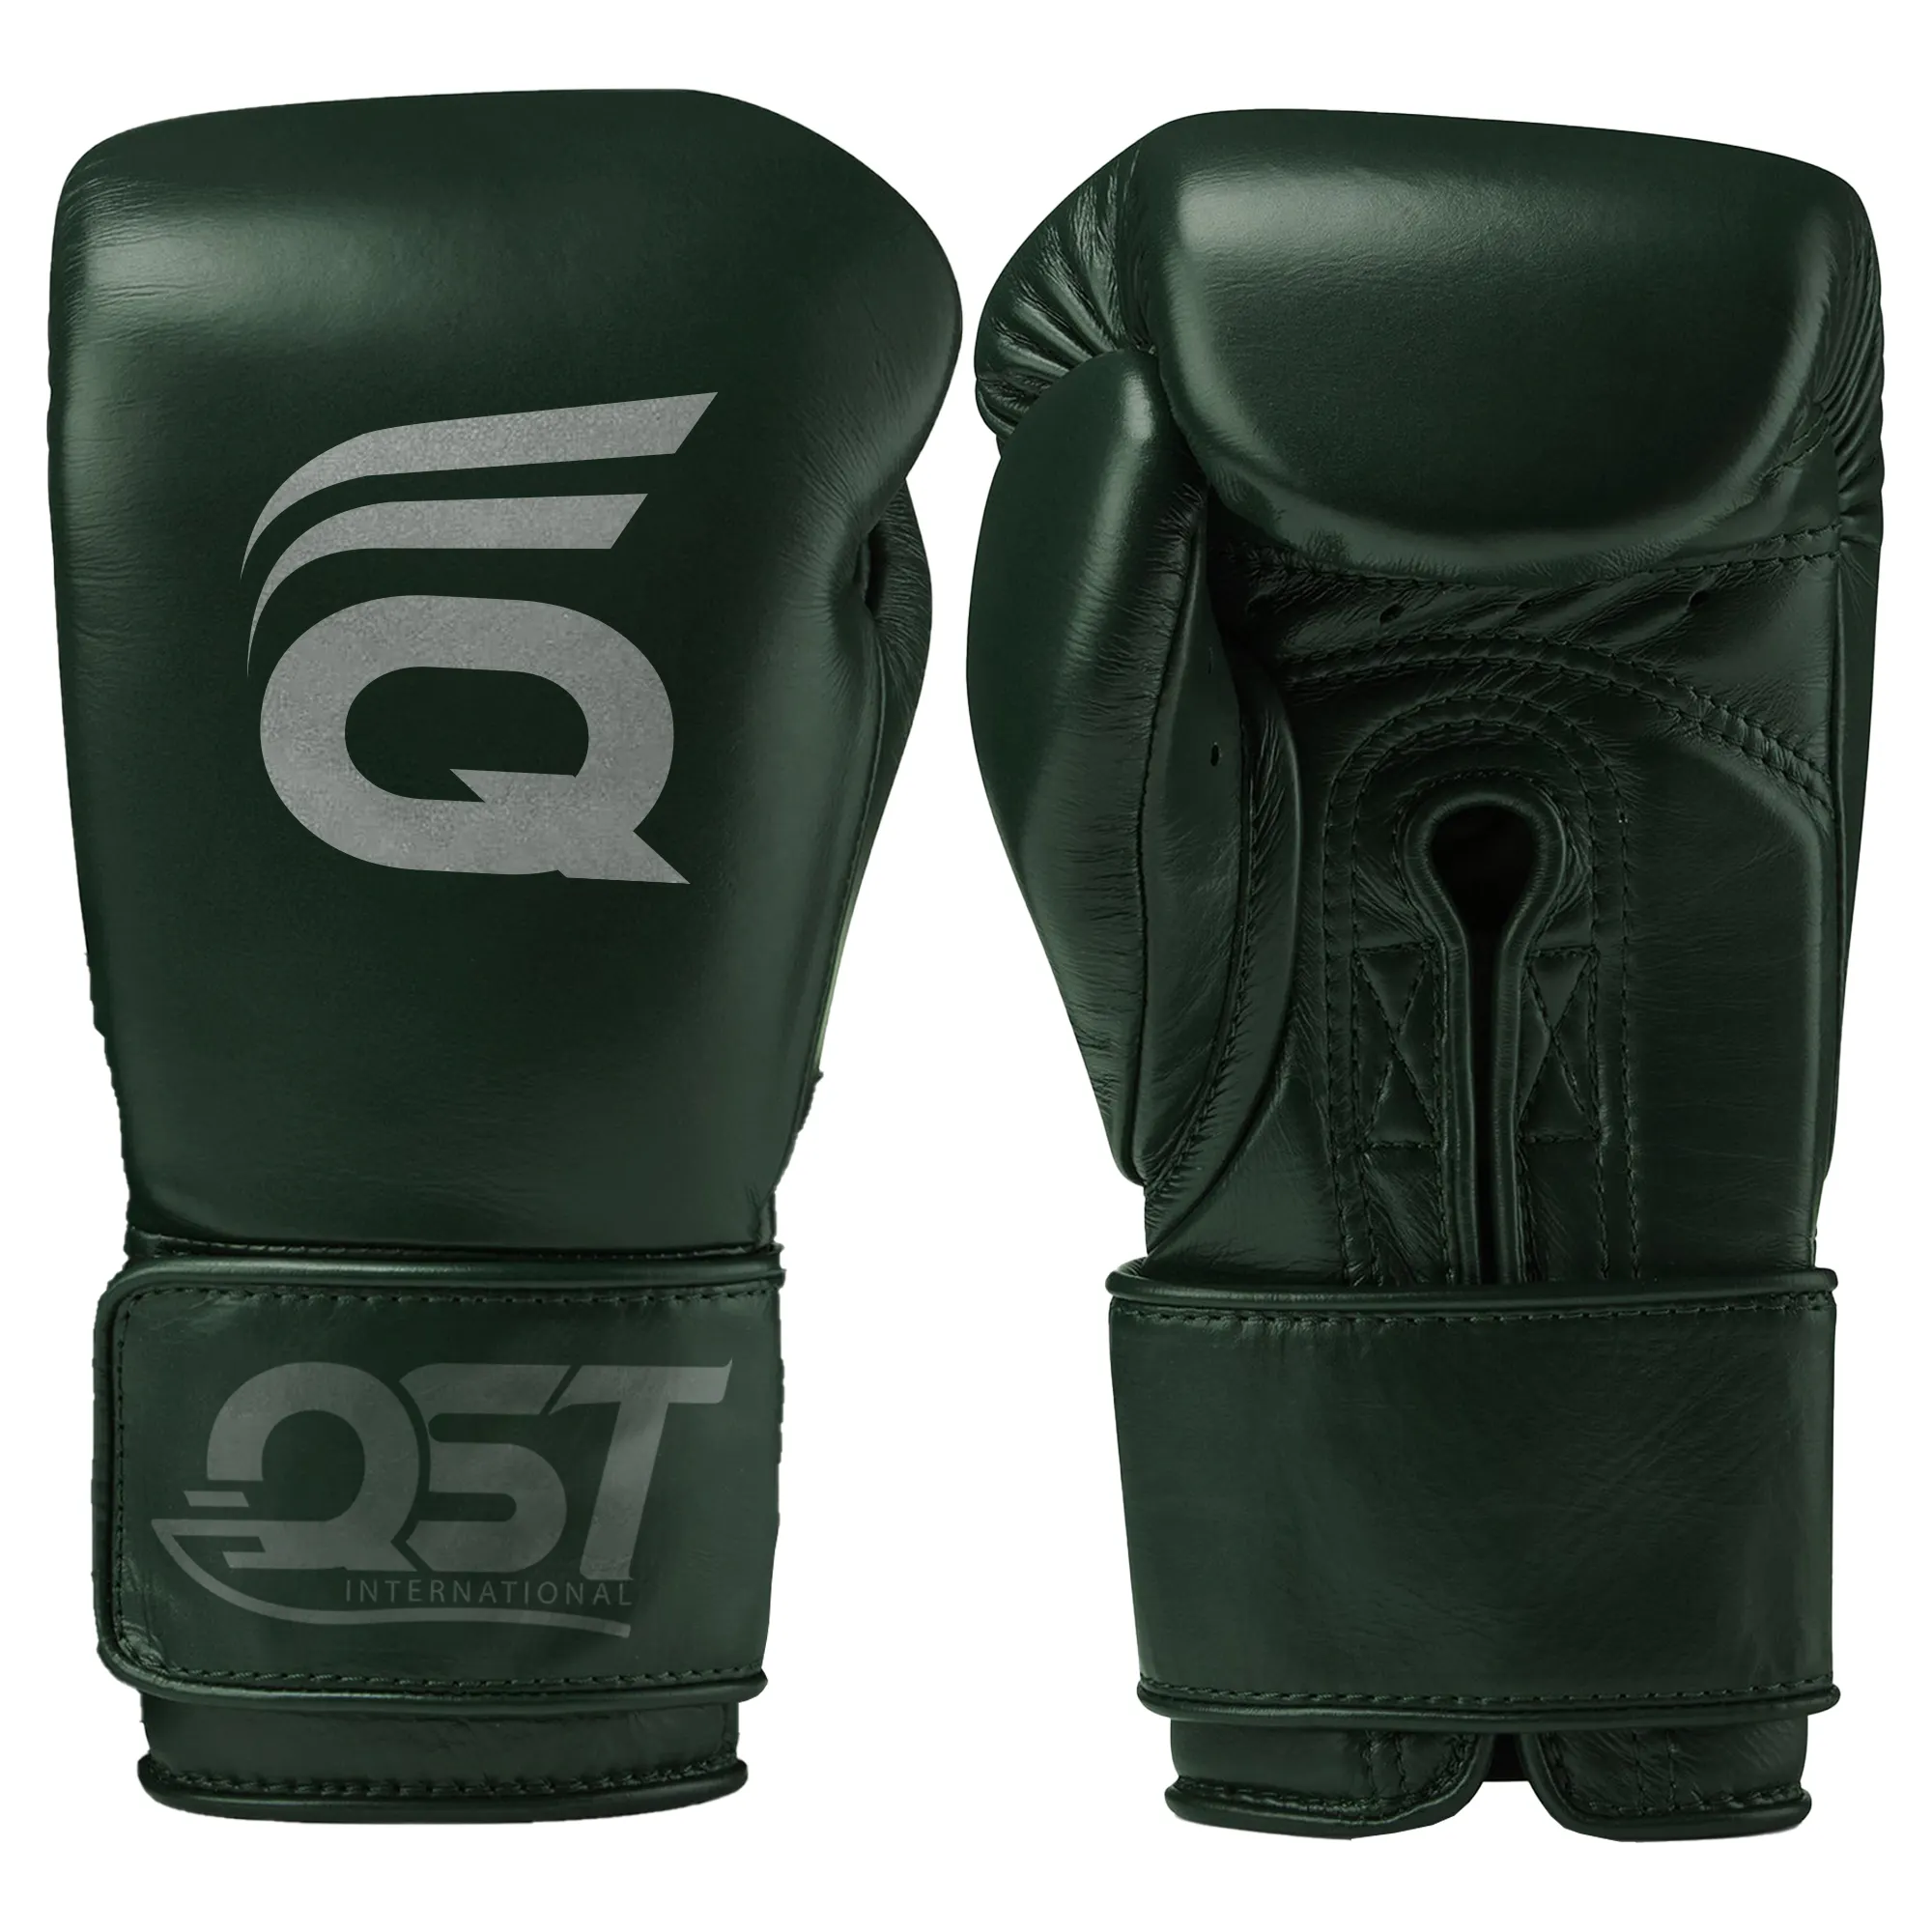 Guantes de boxeo personalizados de marca blanca, guantes hechos de cuero de alta calidad para kickboxing, saco de boxeo, entrenamiento de lucha de combate